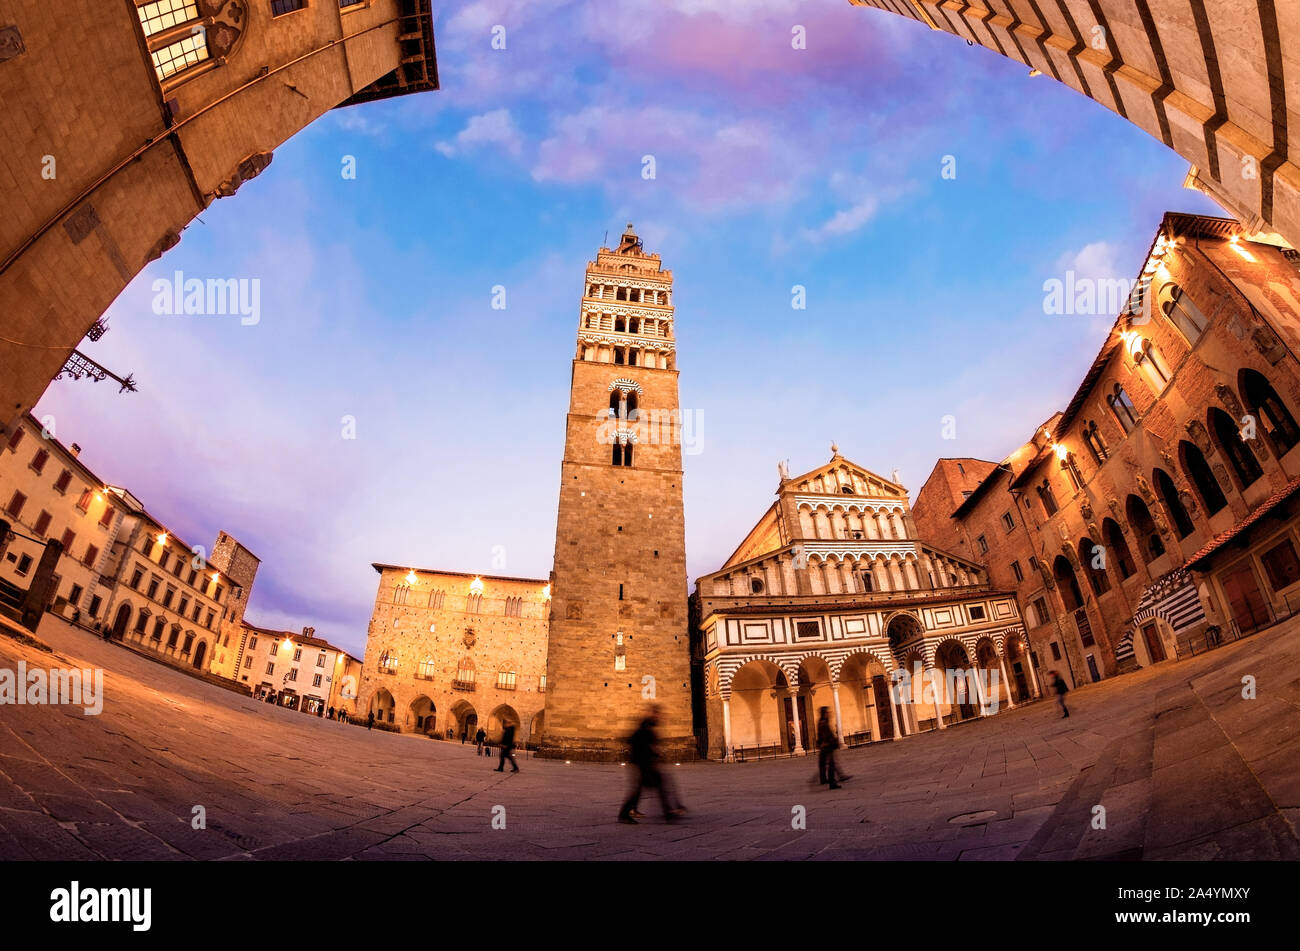 Pistoia, Toskana, Italien Der große Hauptplatz der Stadt Piazza Duomo in einem schönen fisheye Panorama in der blauen Stunde mit seinen Denkmälern Stockfoto